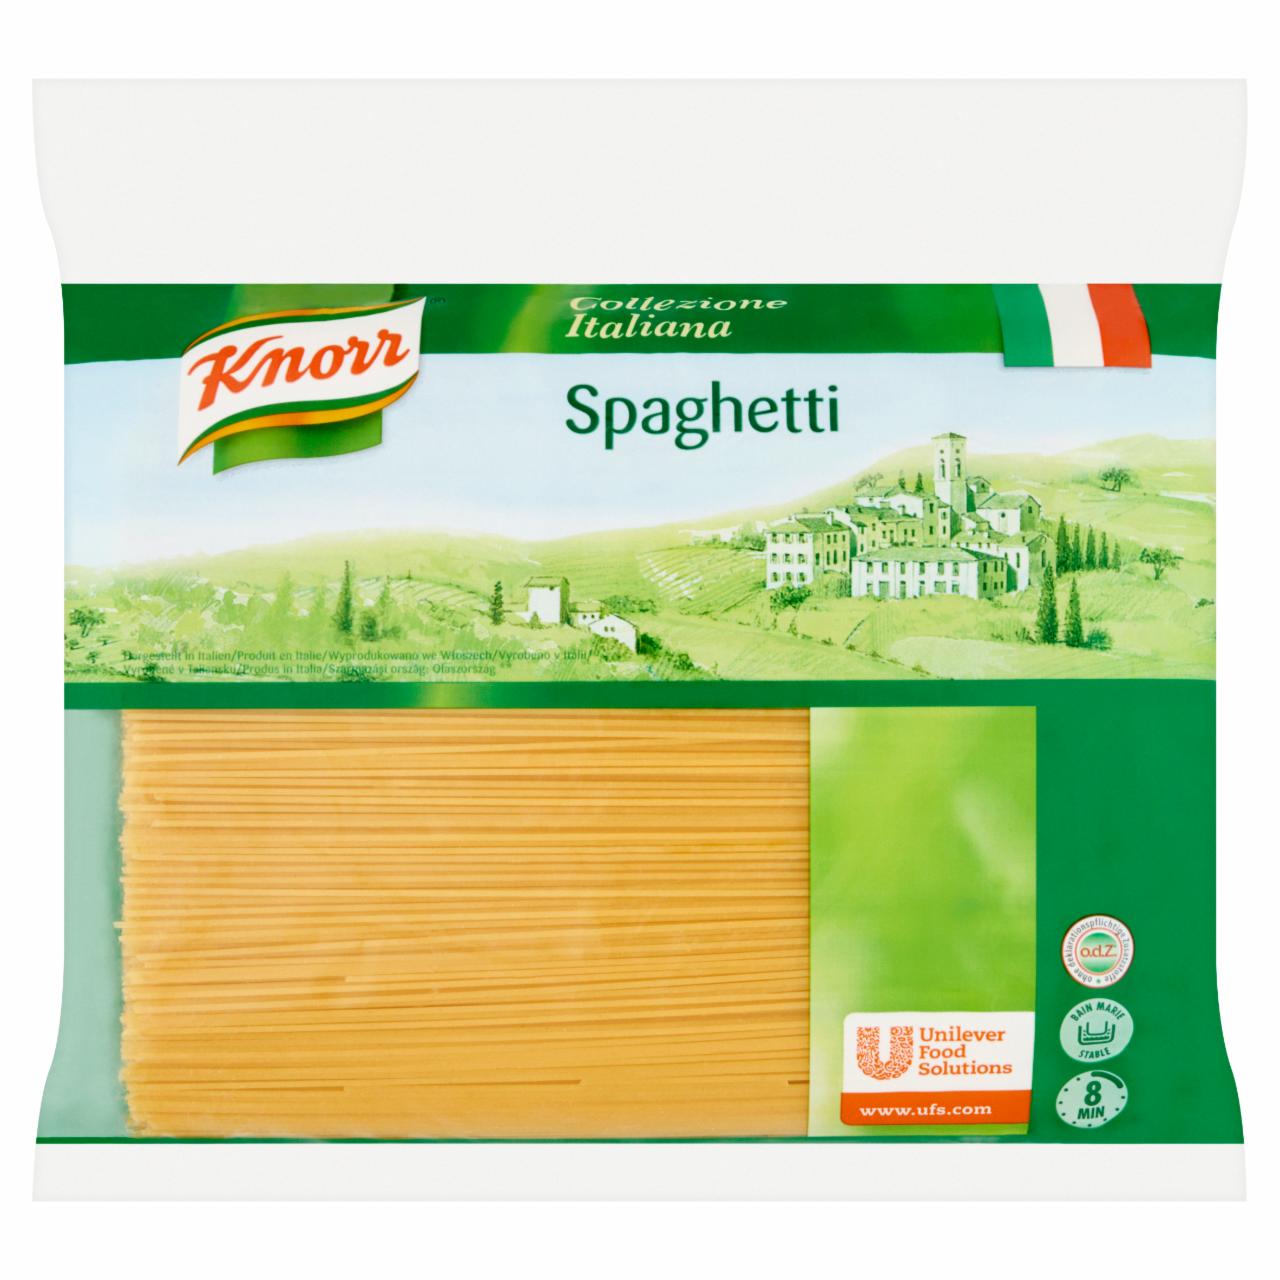 Képek - Knorr Spaghetti durum száraztészta 3 kg